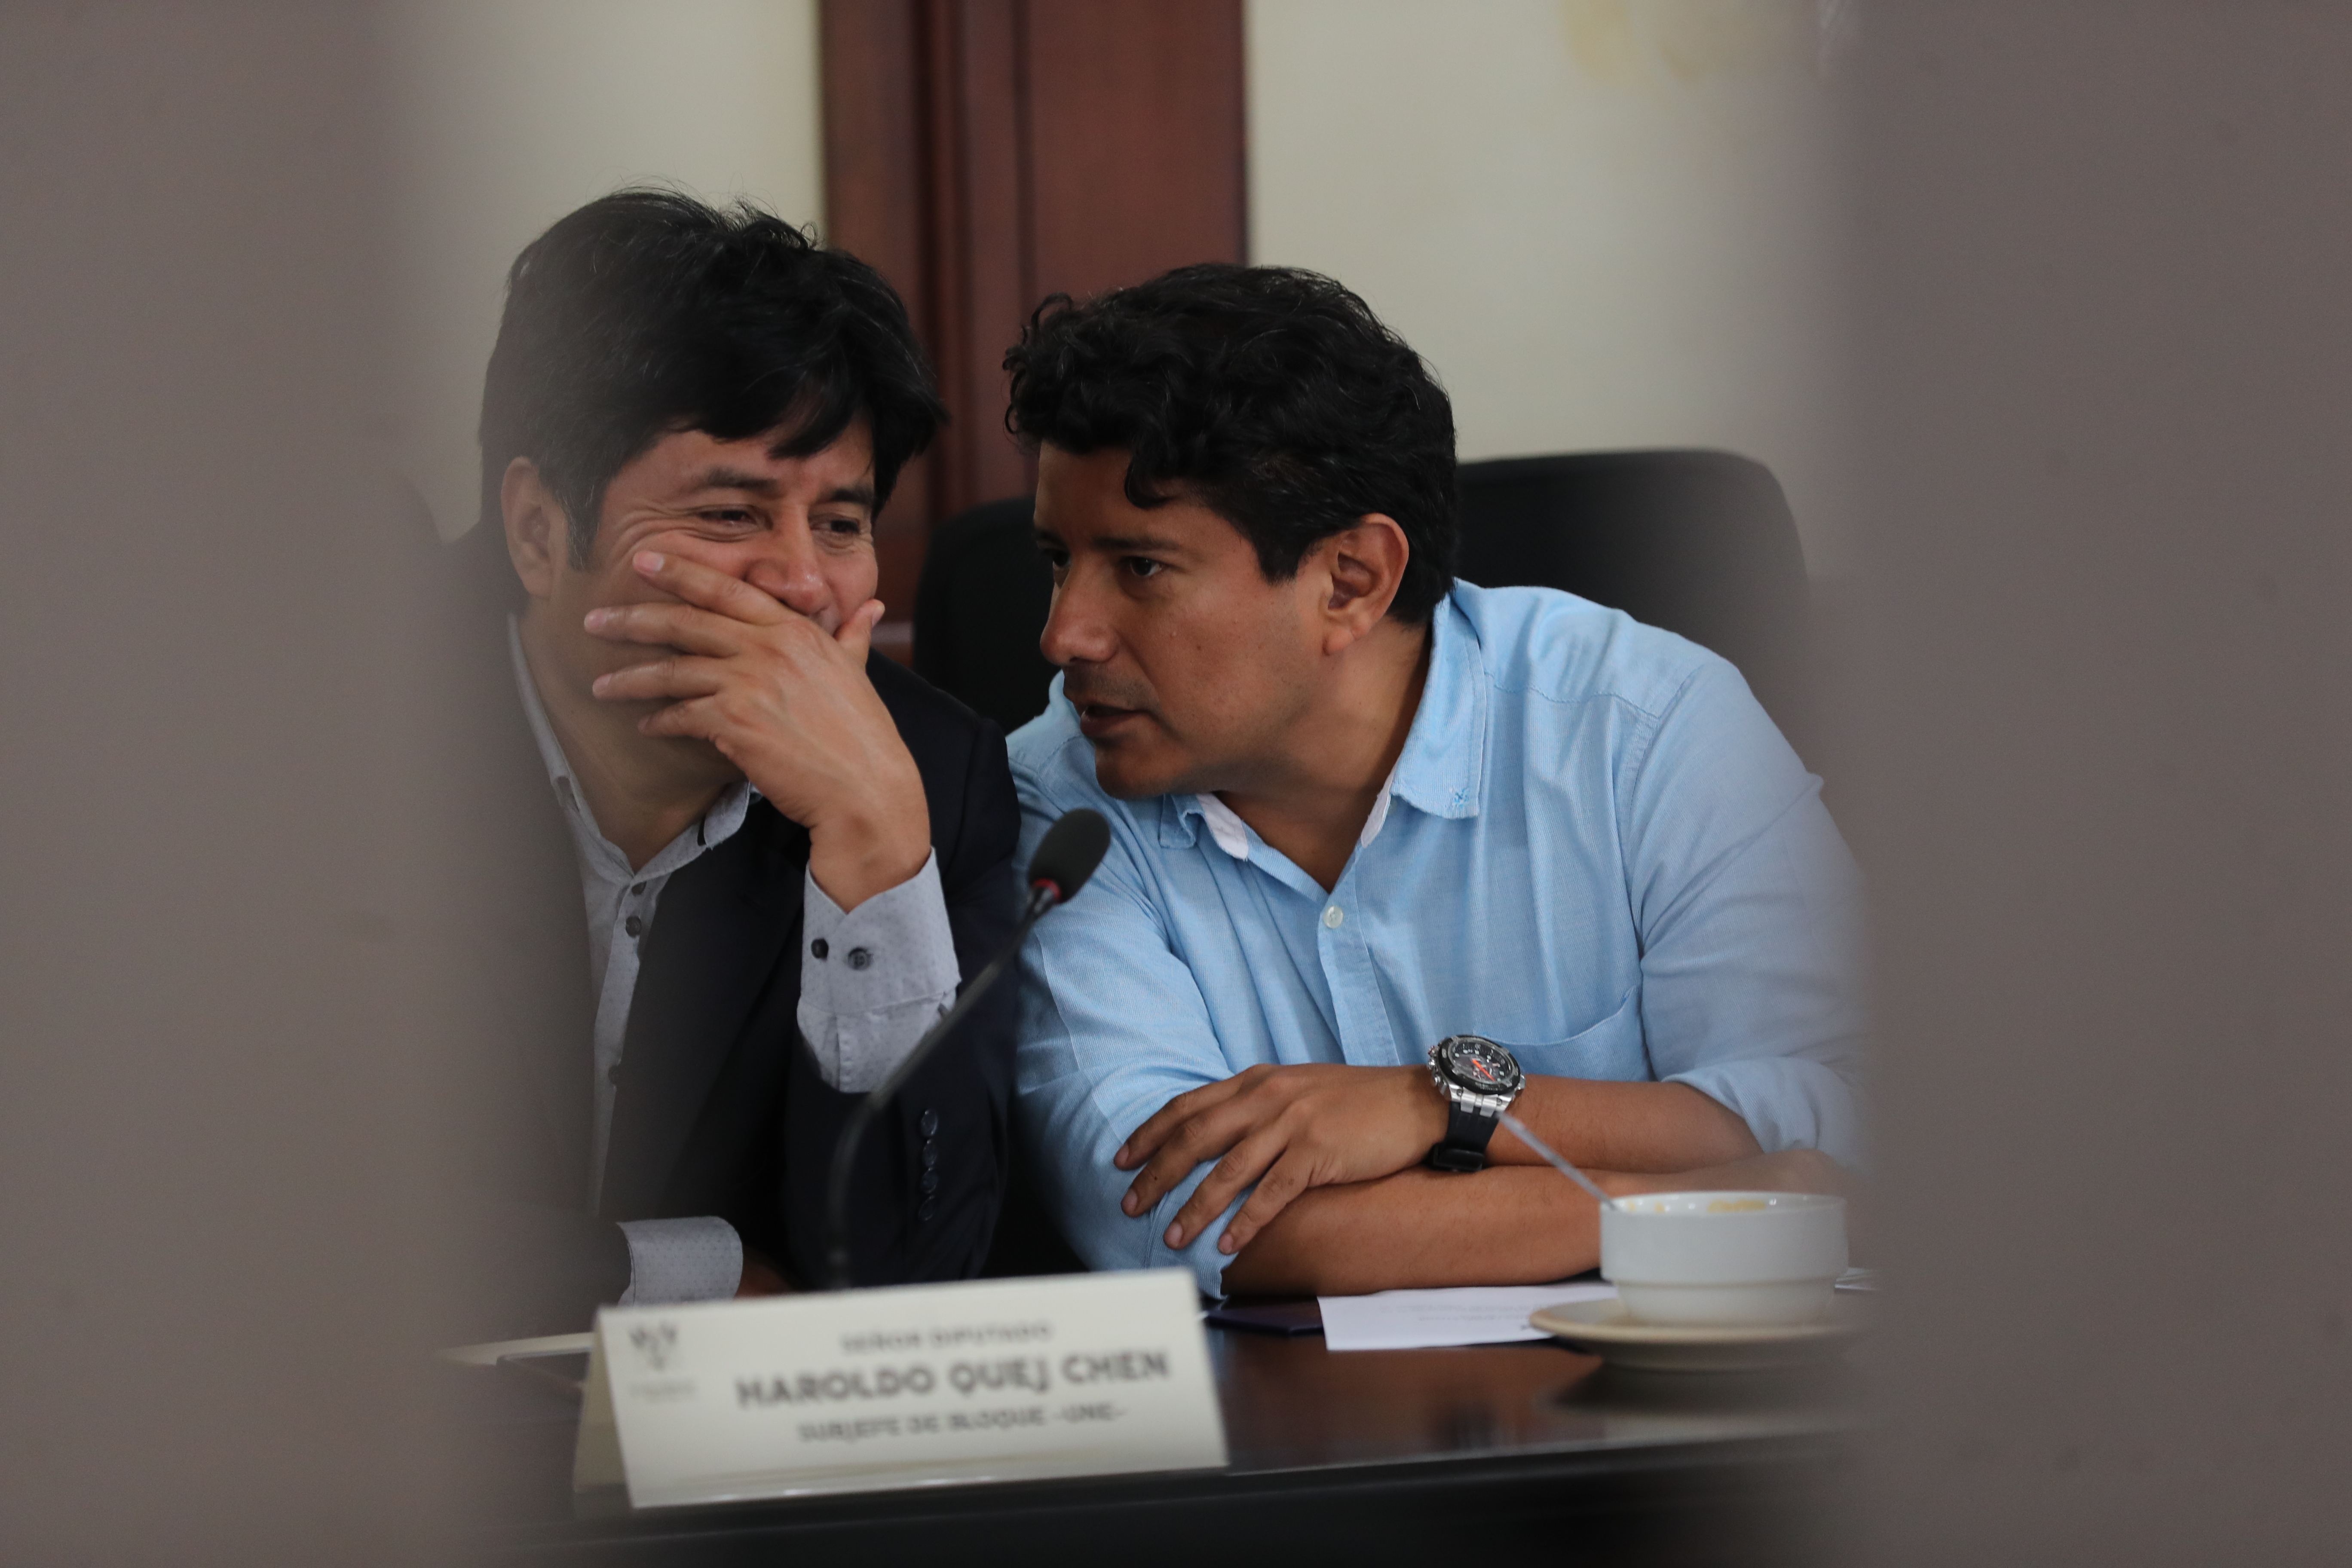 El diputado Haroldo Quej -izquierda- está señalado en el caso Subordinación del Organismo Legislativo al Ejecutivo. (Foto Prensa Libre: Hemeroteca PL)